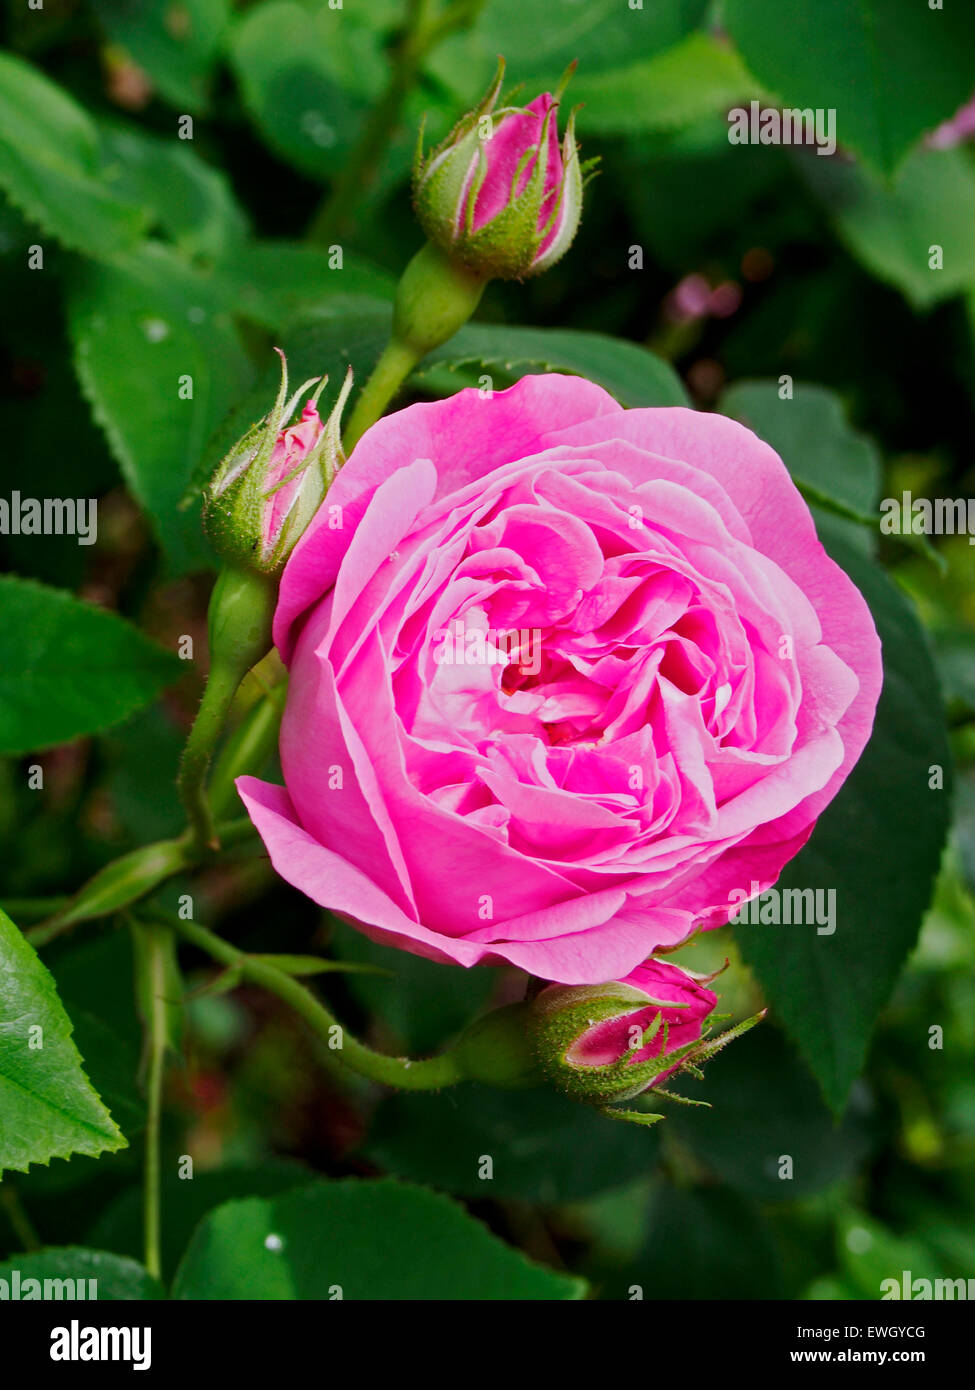 Rose Coupe de Hebe un bourbon 'vieux rose' première produites en 1840. Une rose d'arbustes hauts beaucoup de roulement, globulaire fleurs roses tendres. Banque D'Images